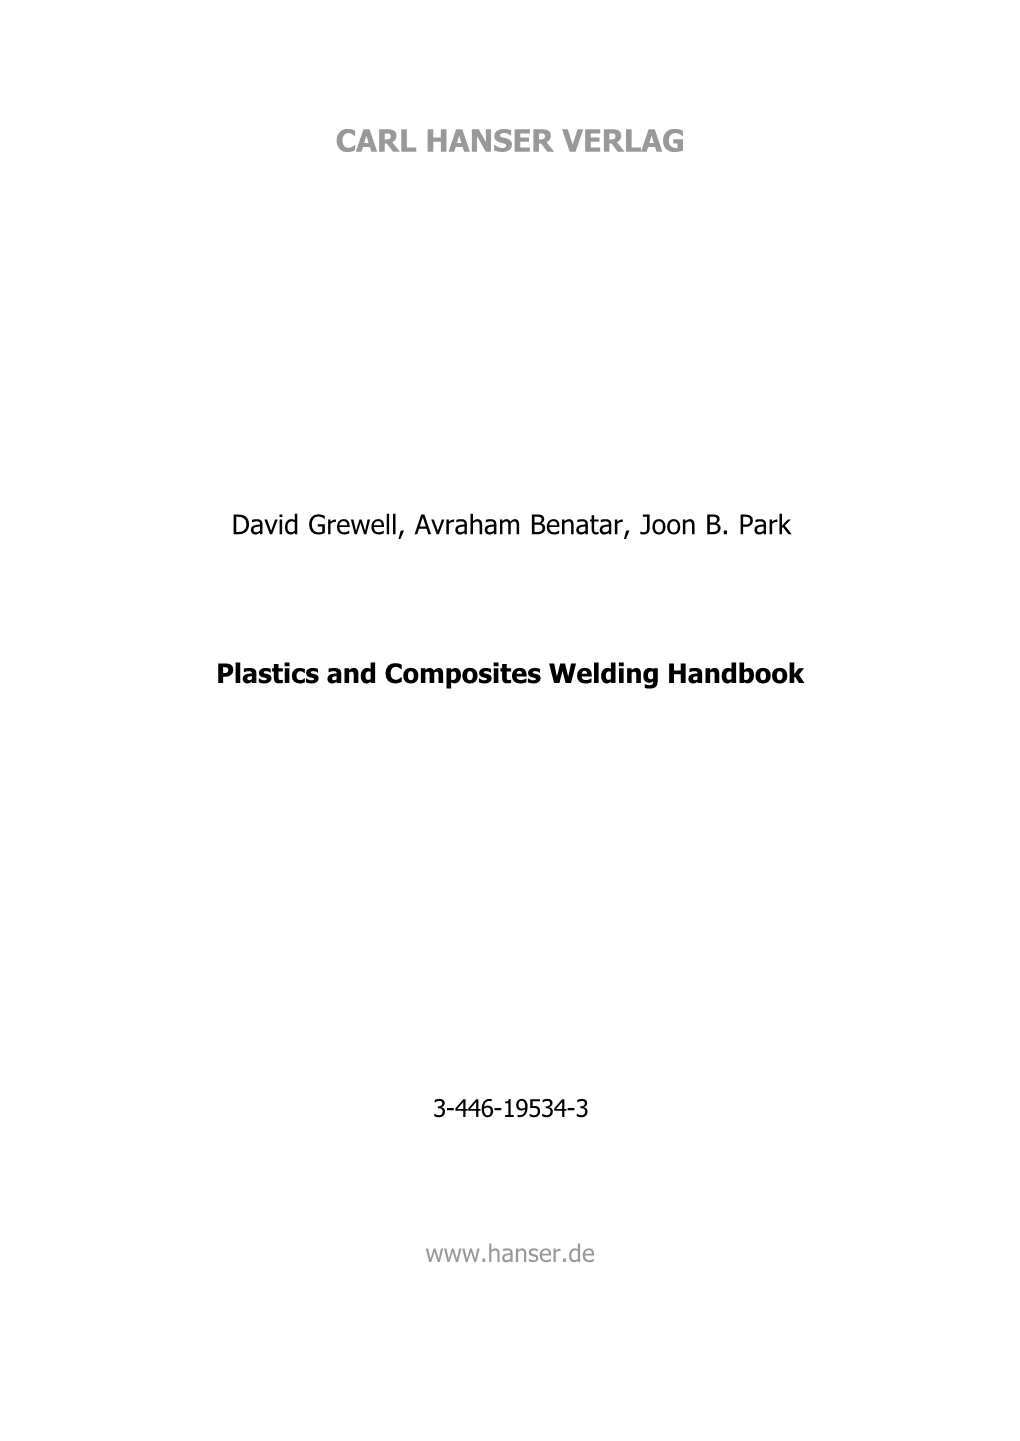 Plastics and Composites Welding Handbook